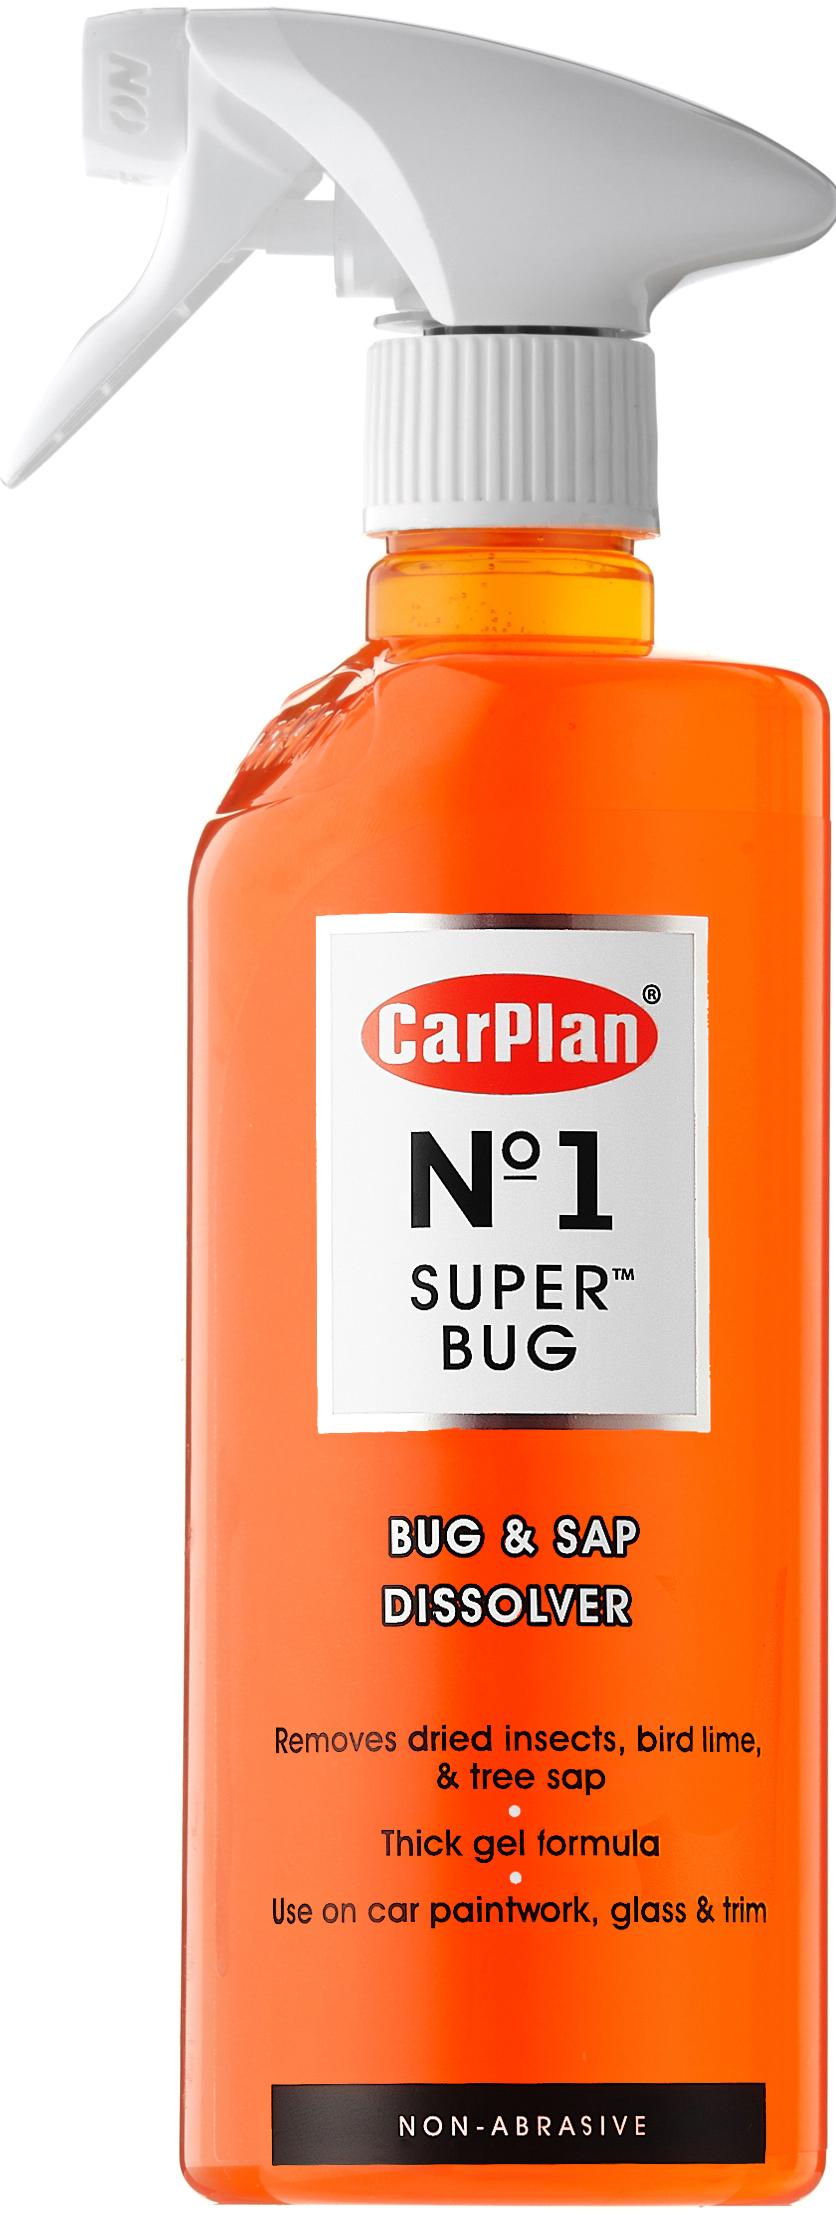 CarPlan No 1 Super Bug - Bug, Bird Lime & Tree Sap Remover 600ml